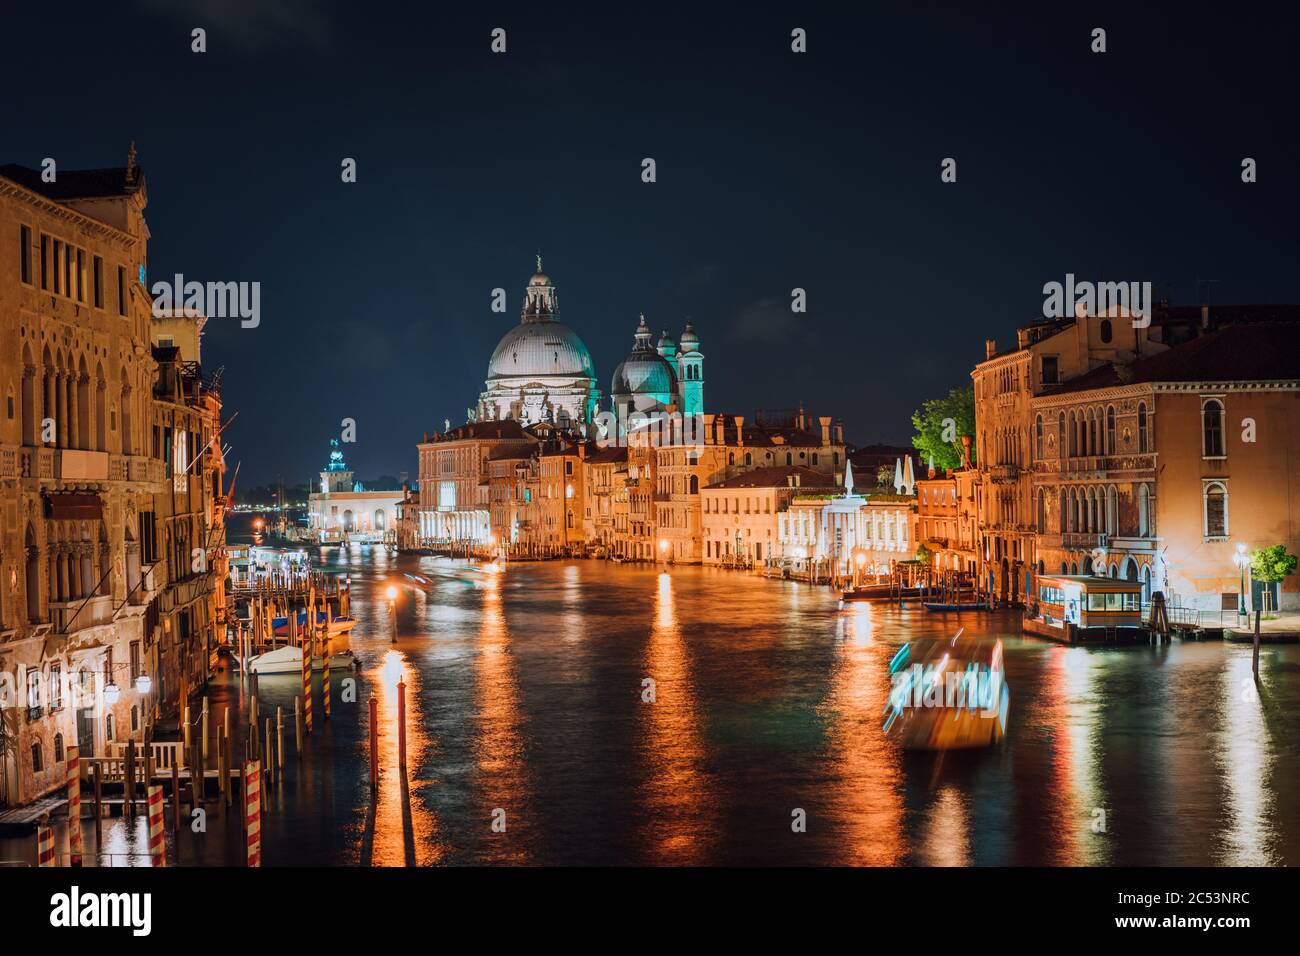 Venise, Italie. Grand Canal la nuit. Lumière d'éclairage réfléchie sur la surface de l'eau. Majestueuse basilique de Santa Maria della Salute en arrière-plan. Banque D'Images